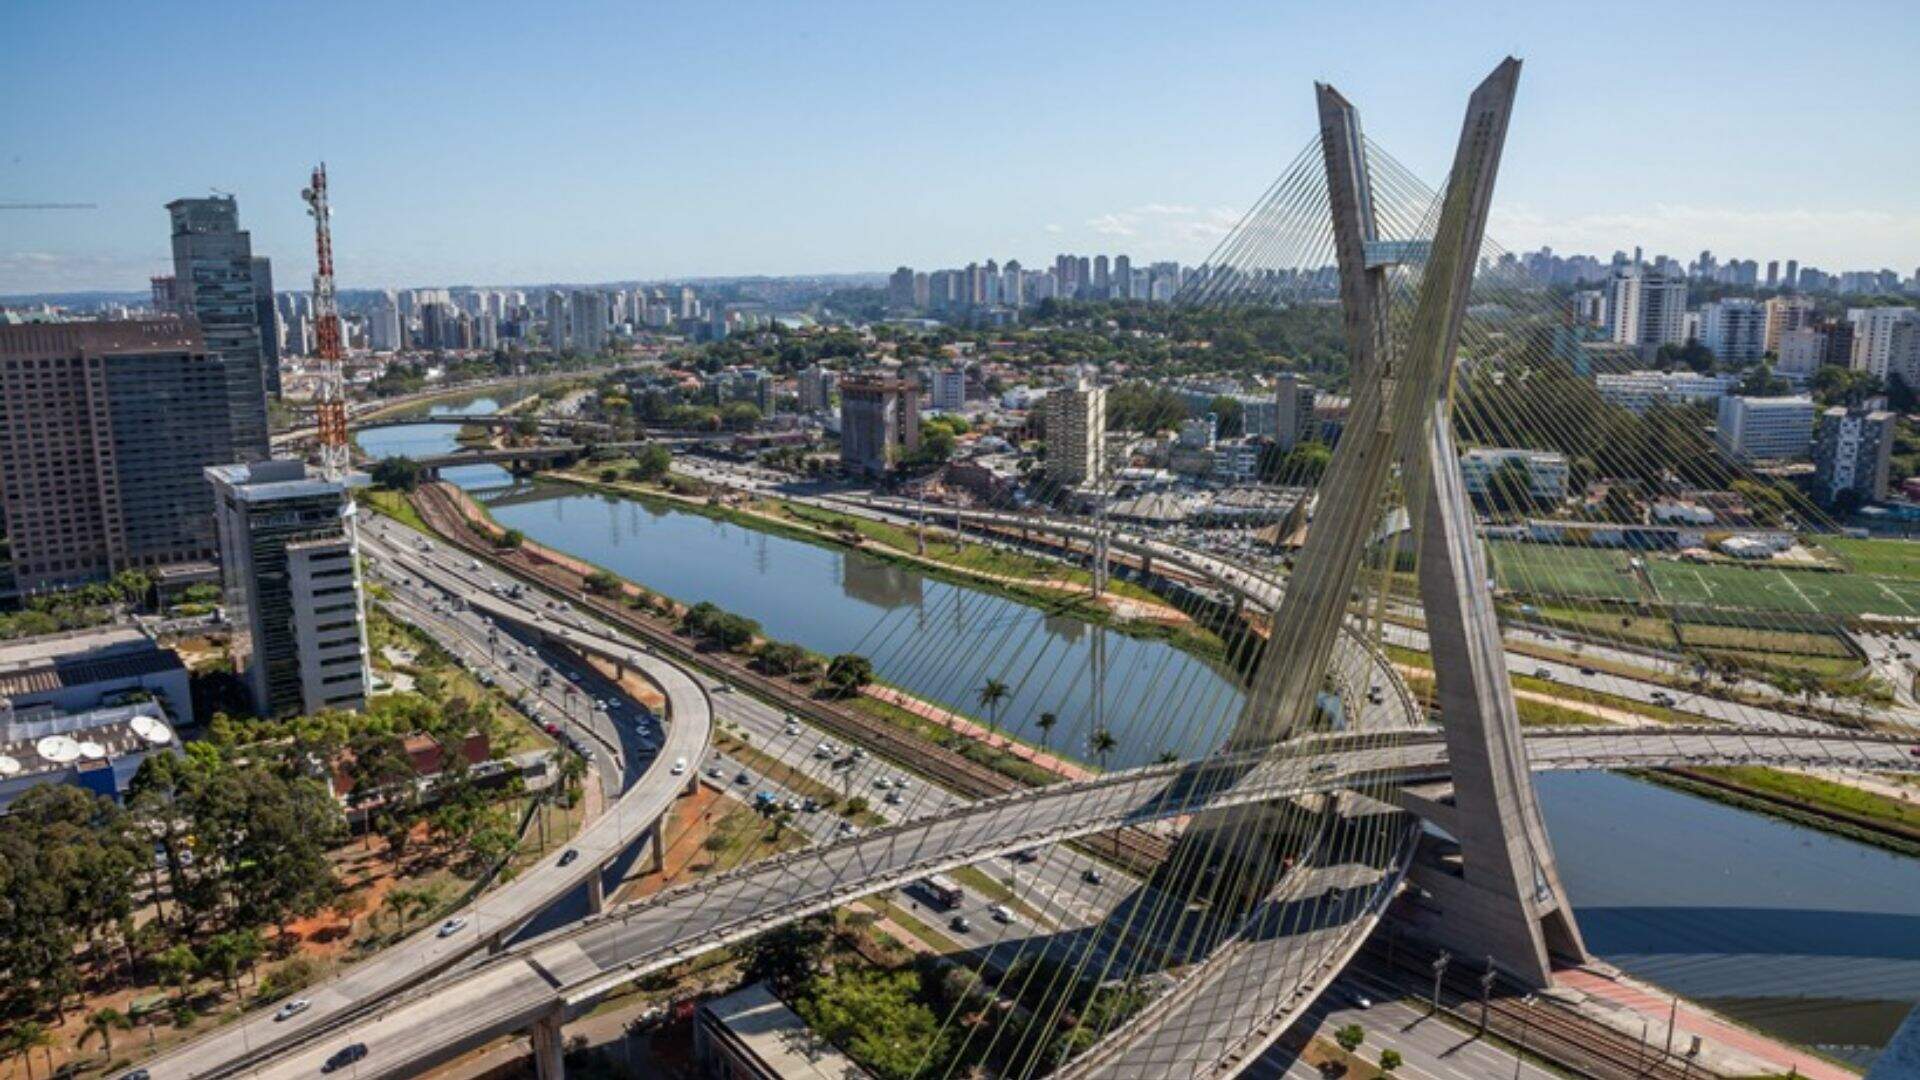 Caos climático: Previsão climática espanta população de São Paulo na primeira semana do inverno